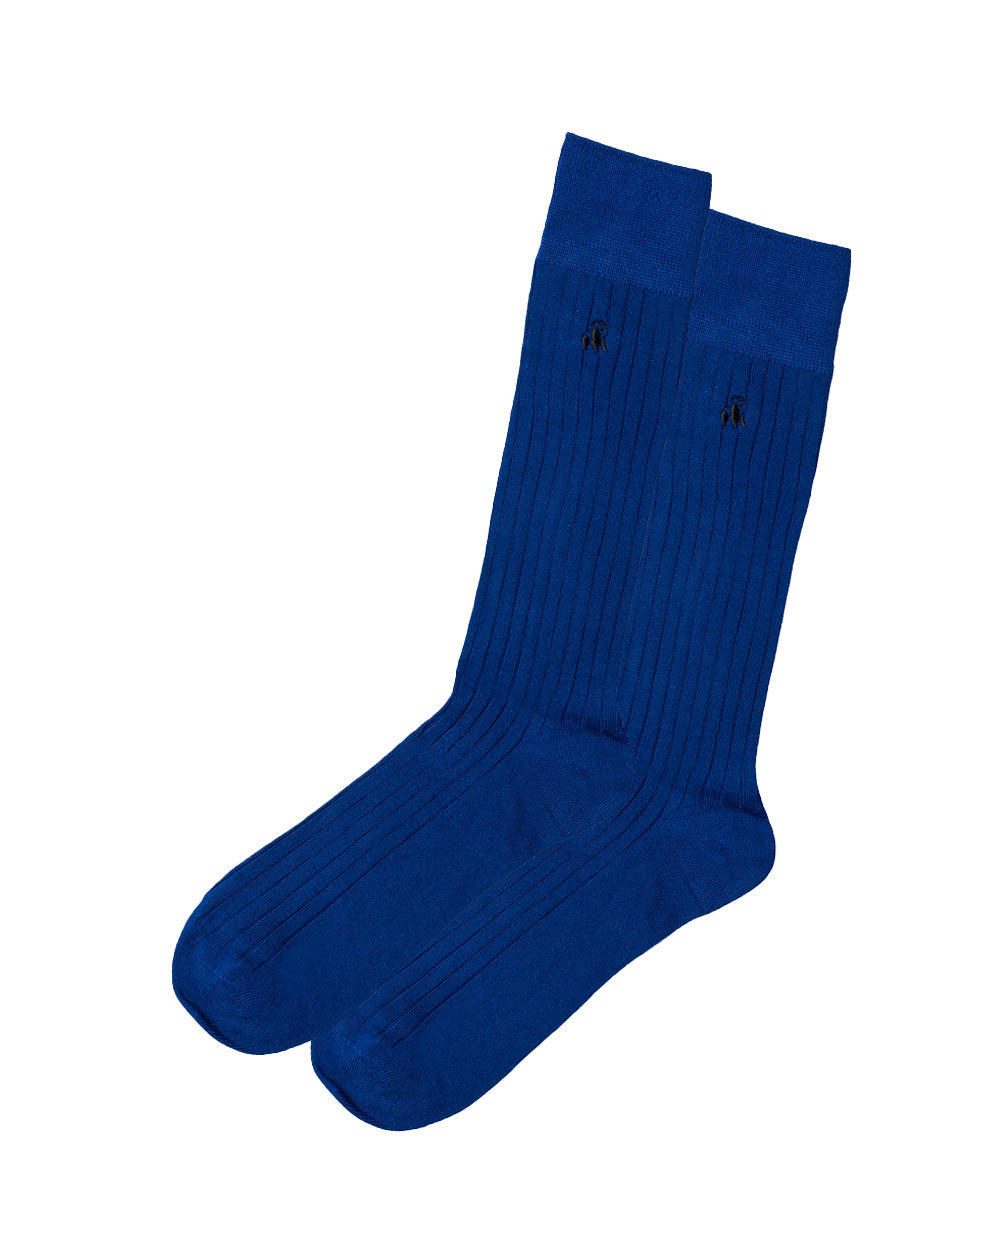 Swole Panda Bamboo Socks 1 Pair (royal blue)